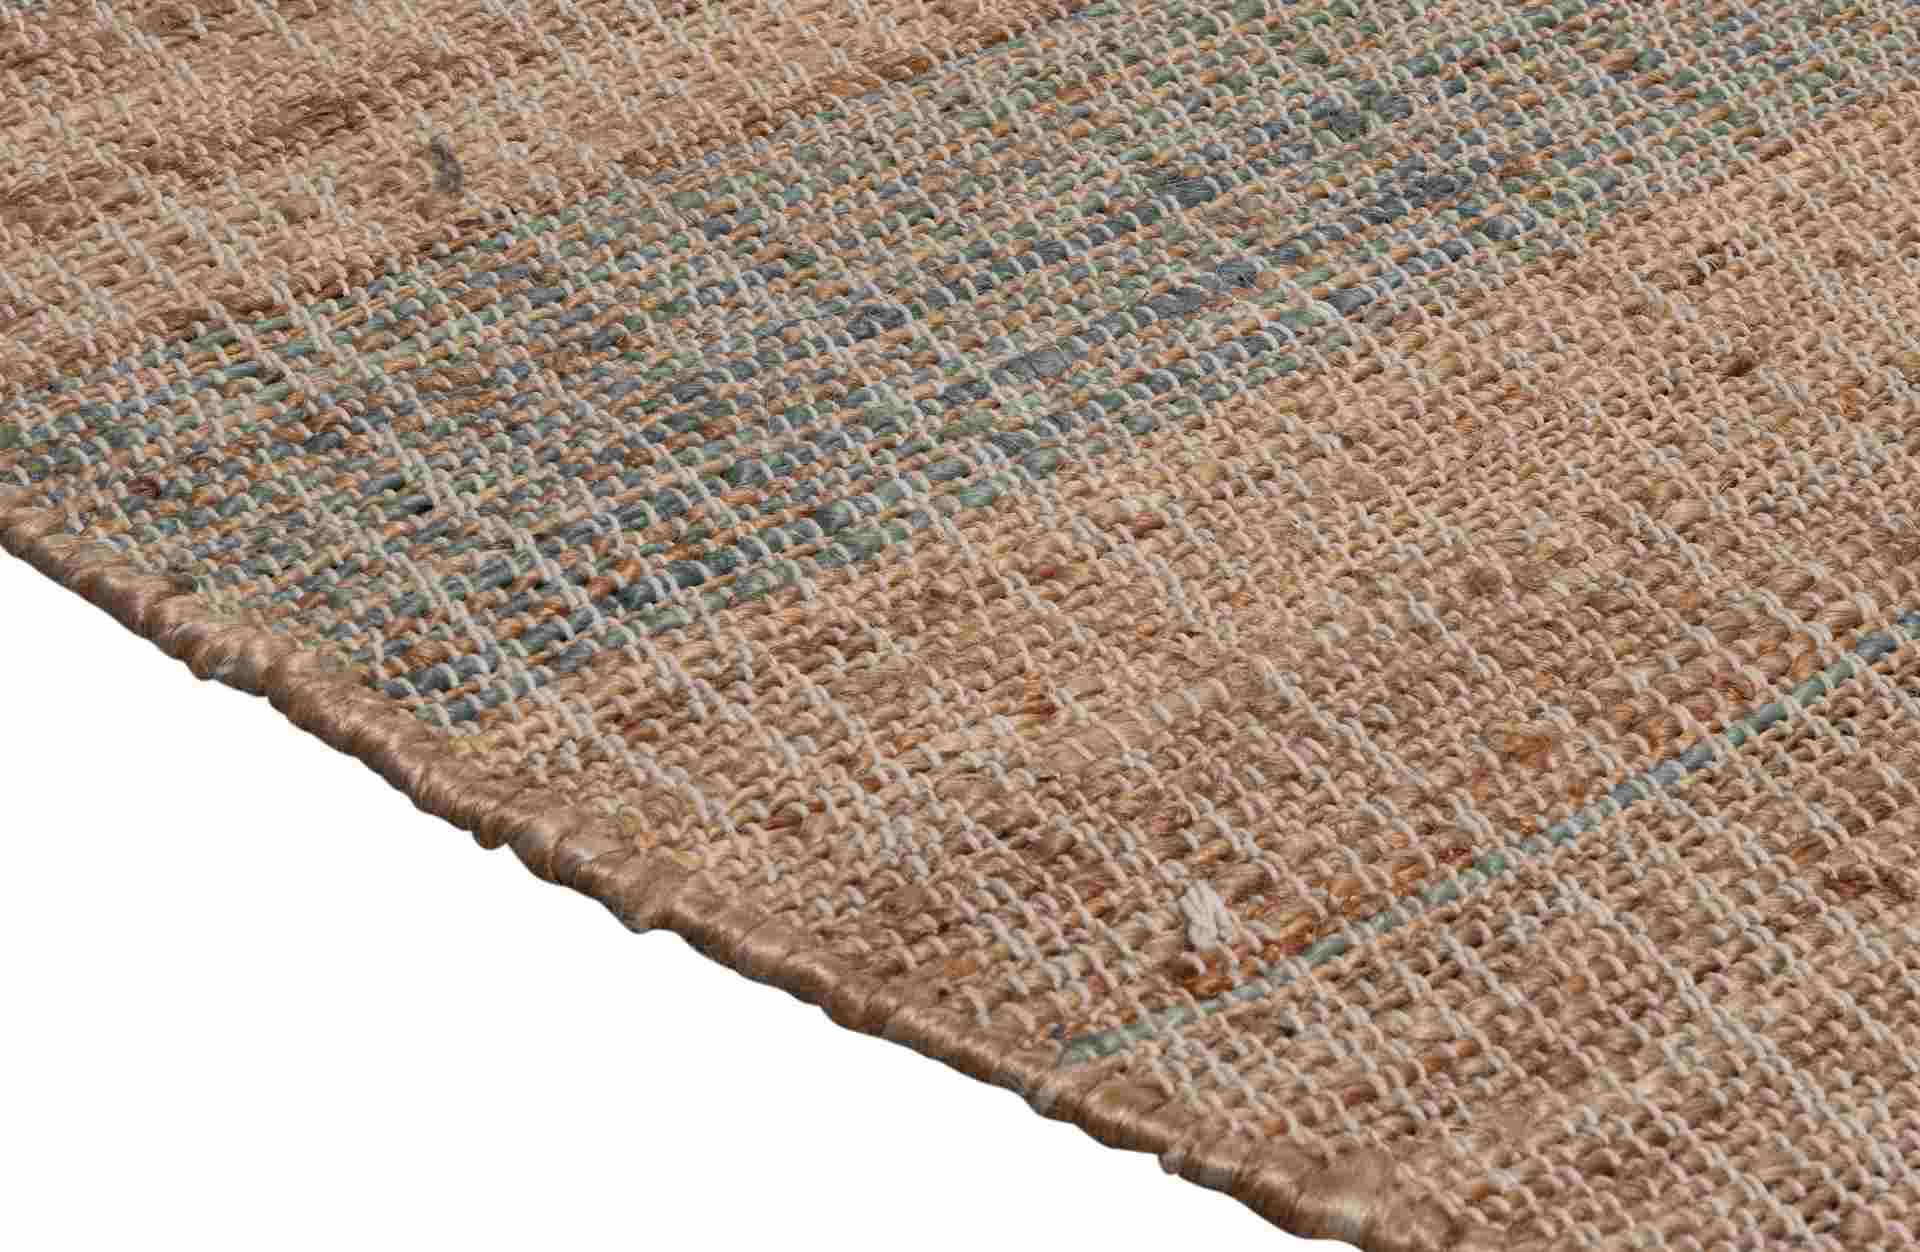 Der Teppich Jacky überzeugt mit seinem modernen Design. Gefertigt wurde er aus Jute, welche einen natürlichen Farbton besitzt. Der Teppich besitzt ein Durchmesser von 200 cm.